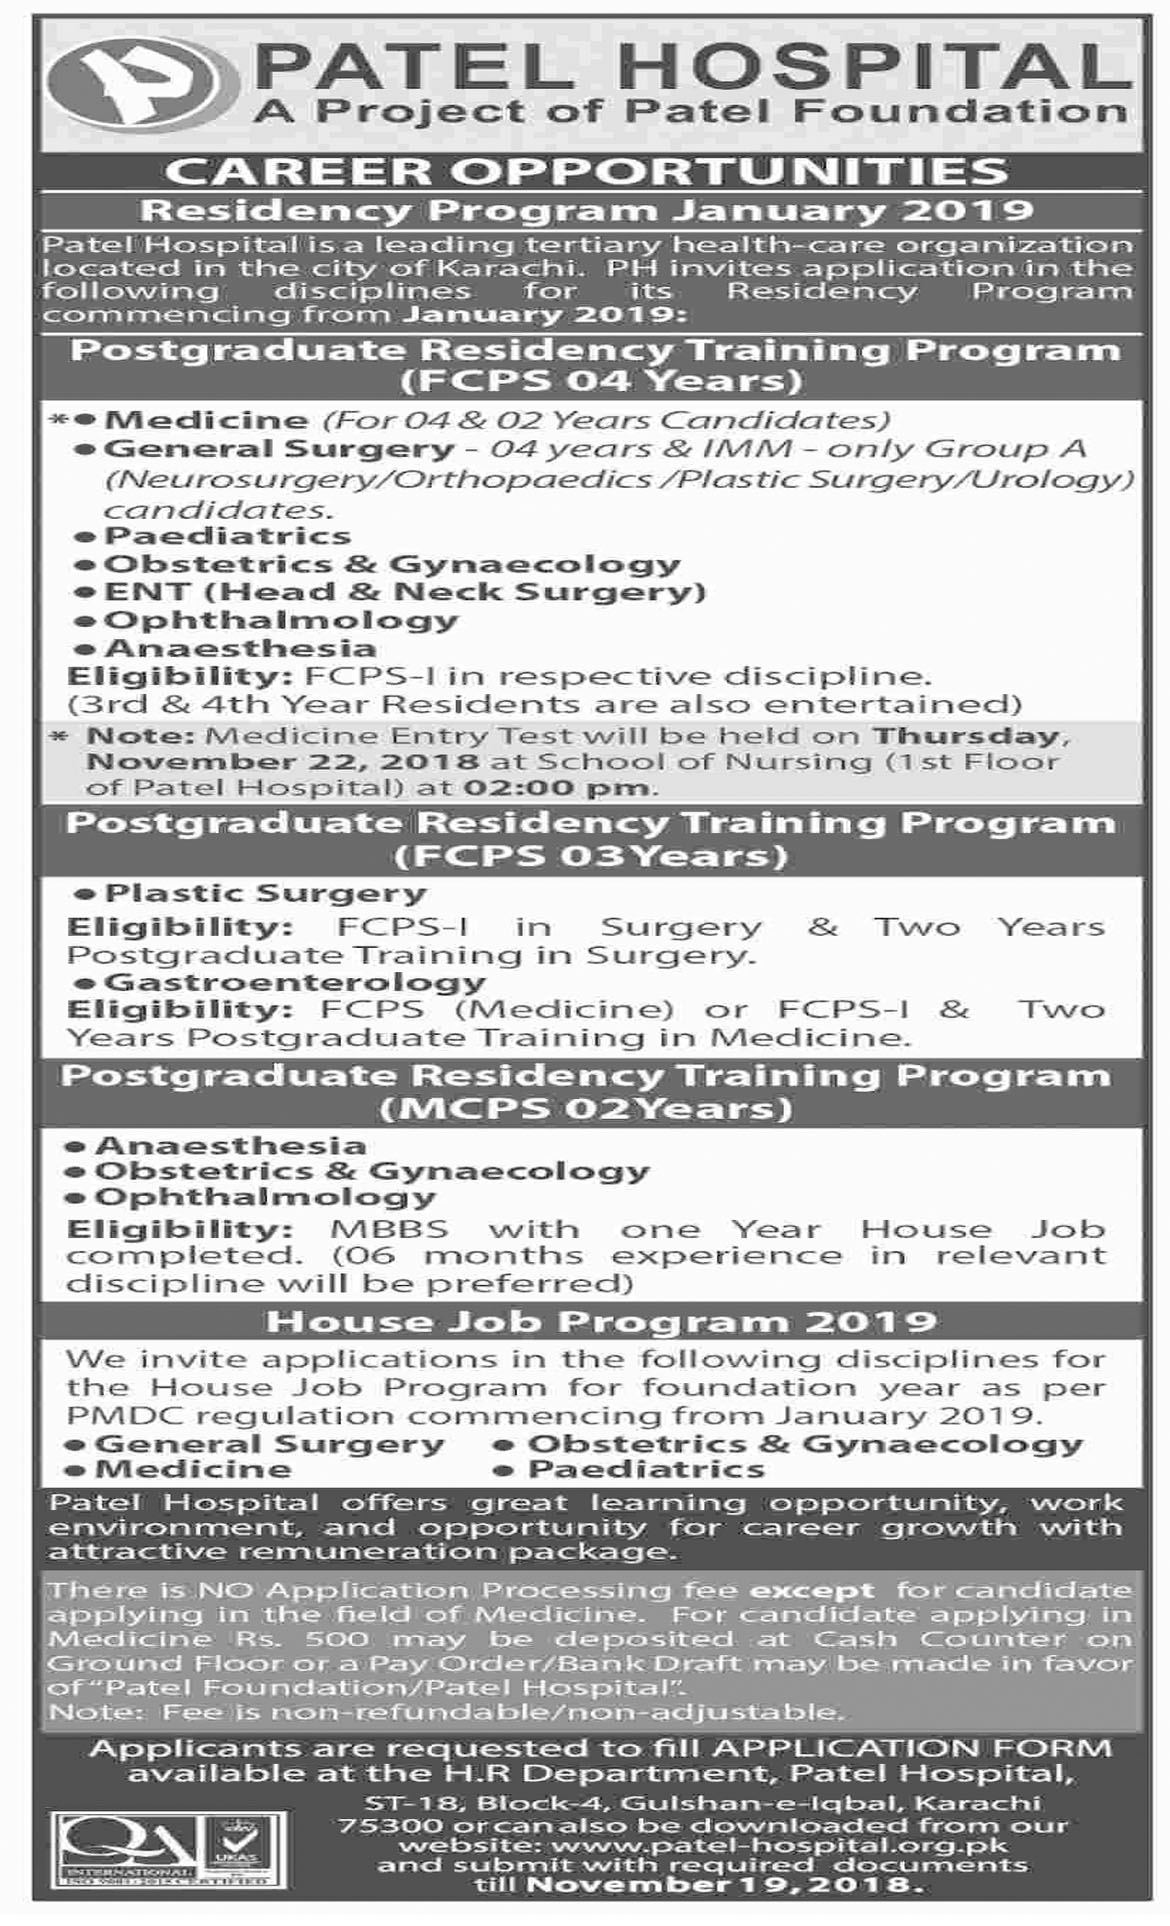 Jobs In Patel Hospital Karachi 06 Nov 2018